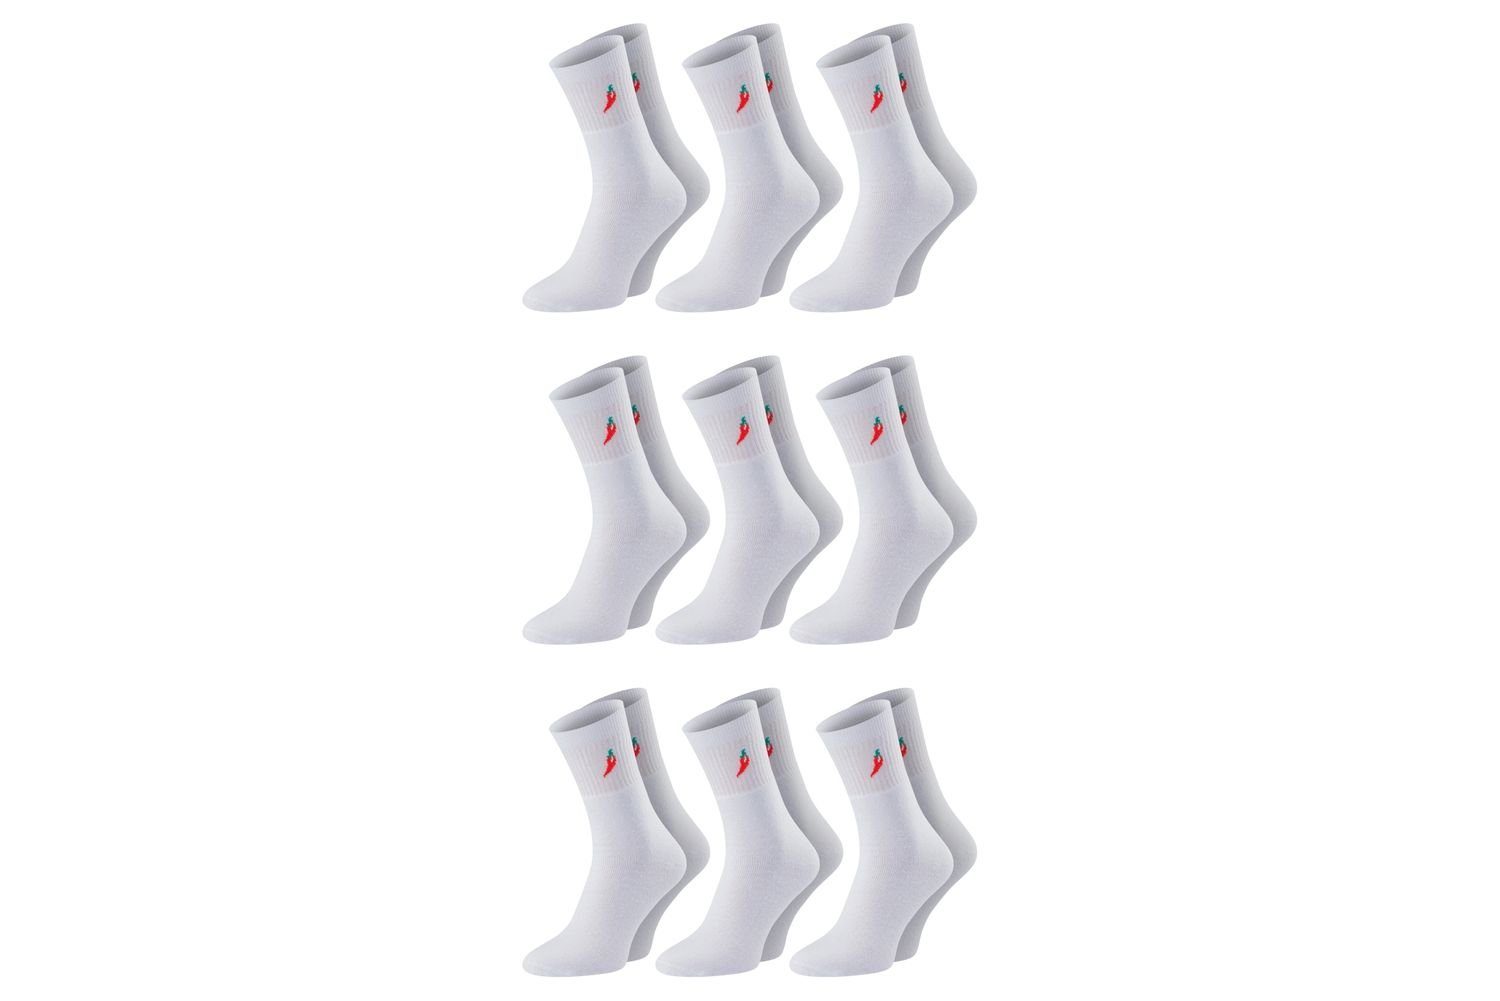 Chili Lifestyle Strümpfe Basic Sport Tennis Socken, 9 Paar, für Herren und Damen, Baumwolle